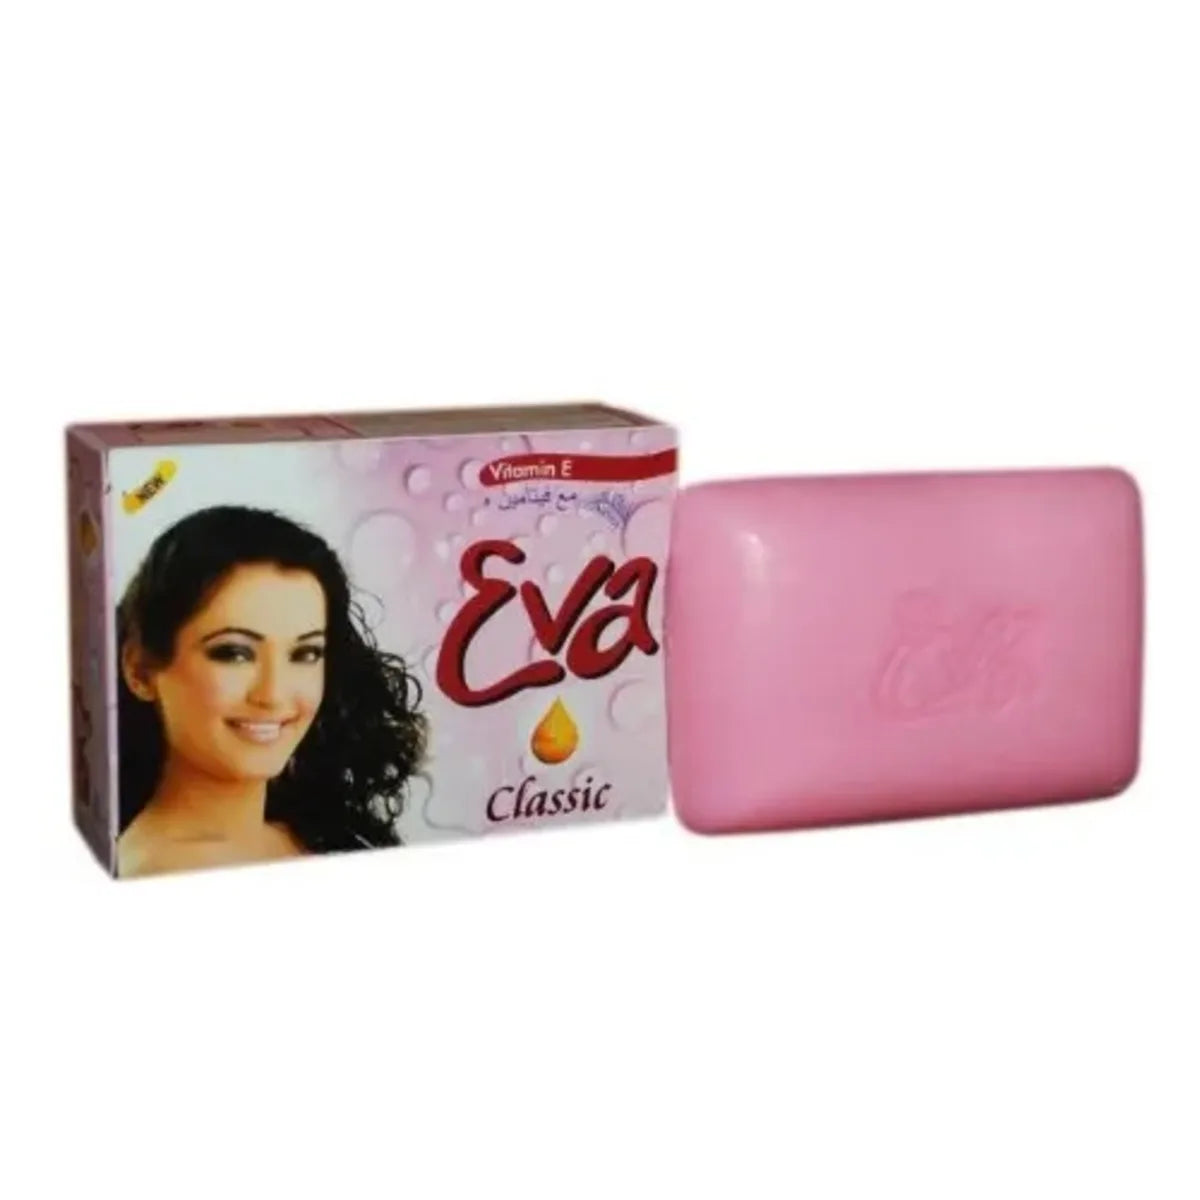 Eva soap (classic)